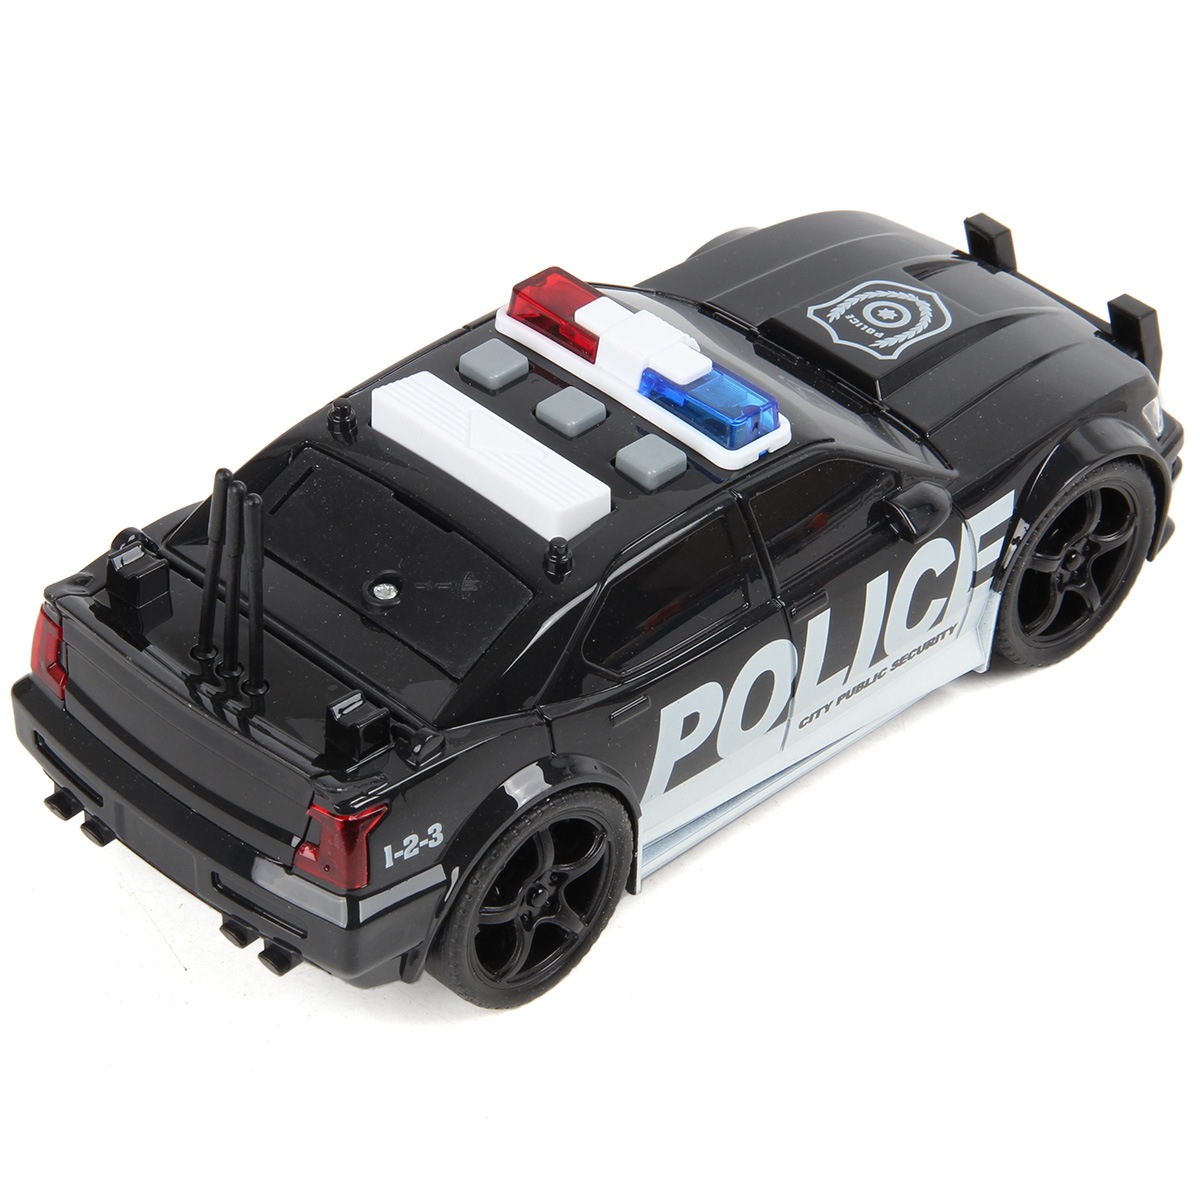 Машинка Drift Полицейская Blaсk Edition 1:20, со светом и звуком